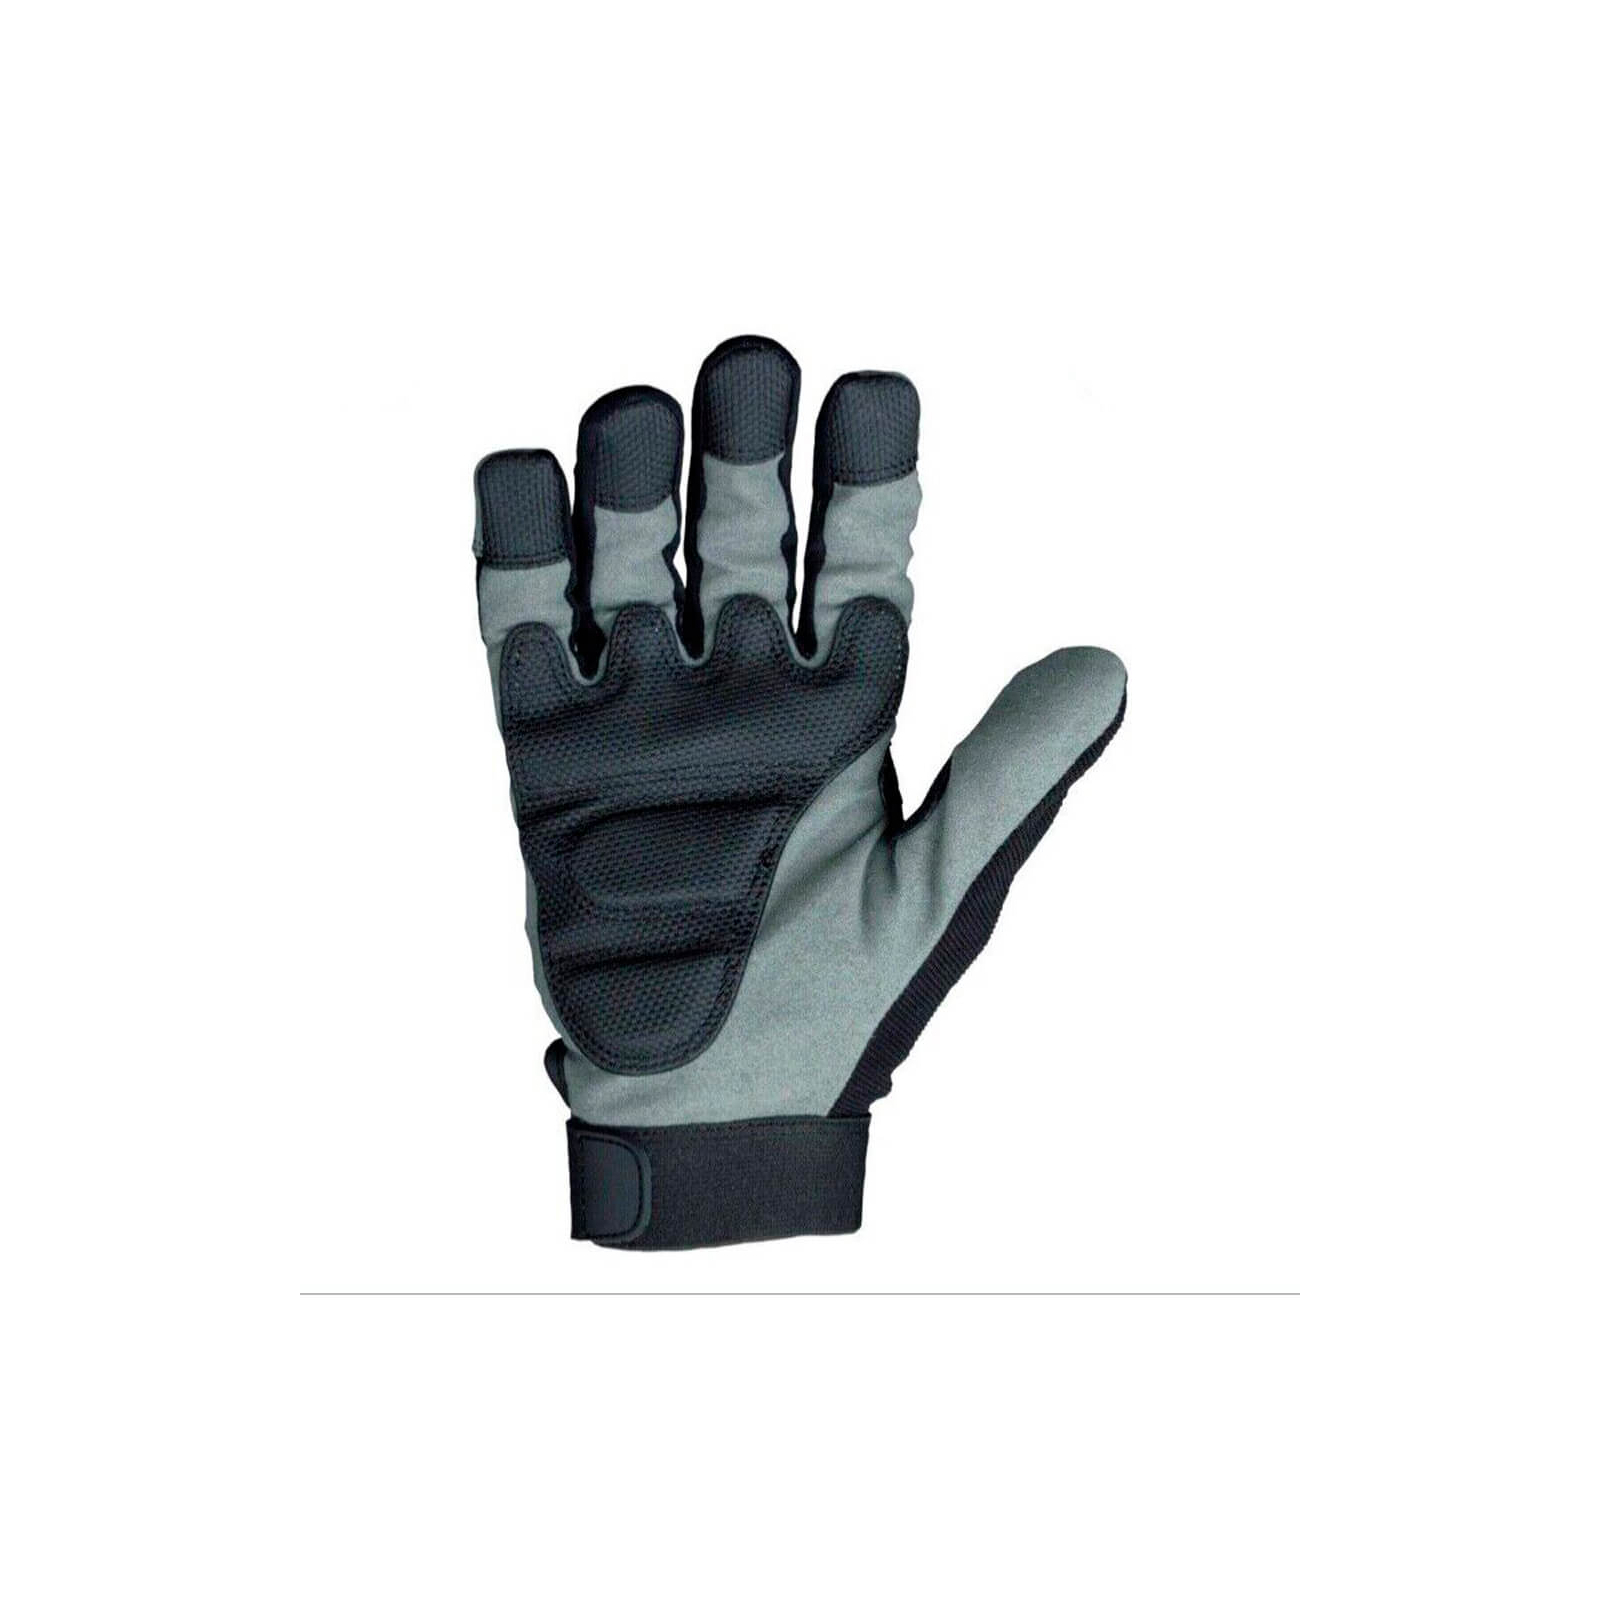 Защитные перчатки DeWALT разм. L/9, с накладкой ToughThread™ и гелевой вставкой (DPG33L) изображение 2